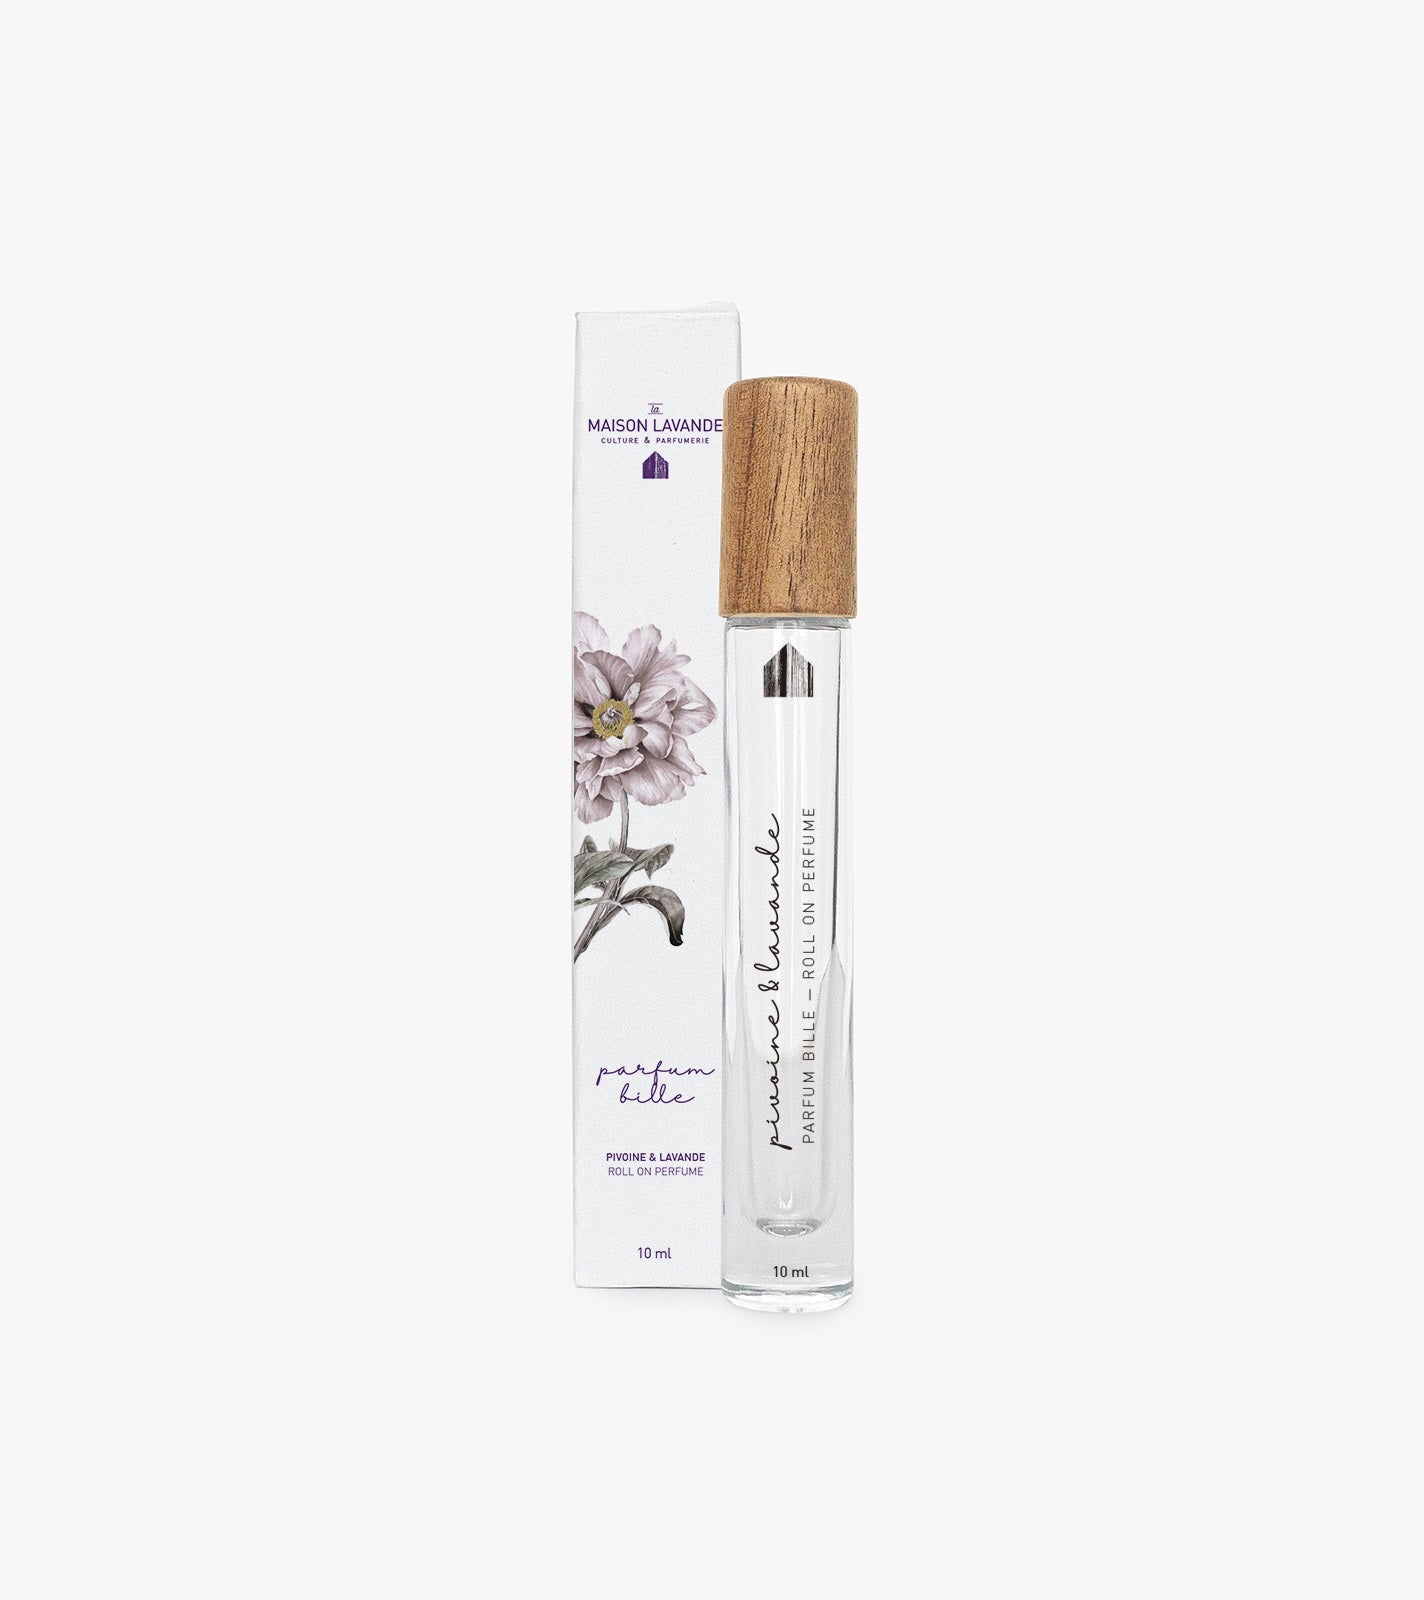 Parfum bille - Pivoine & Lavande||Roll on perfume - Peony & Lavender